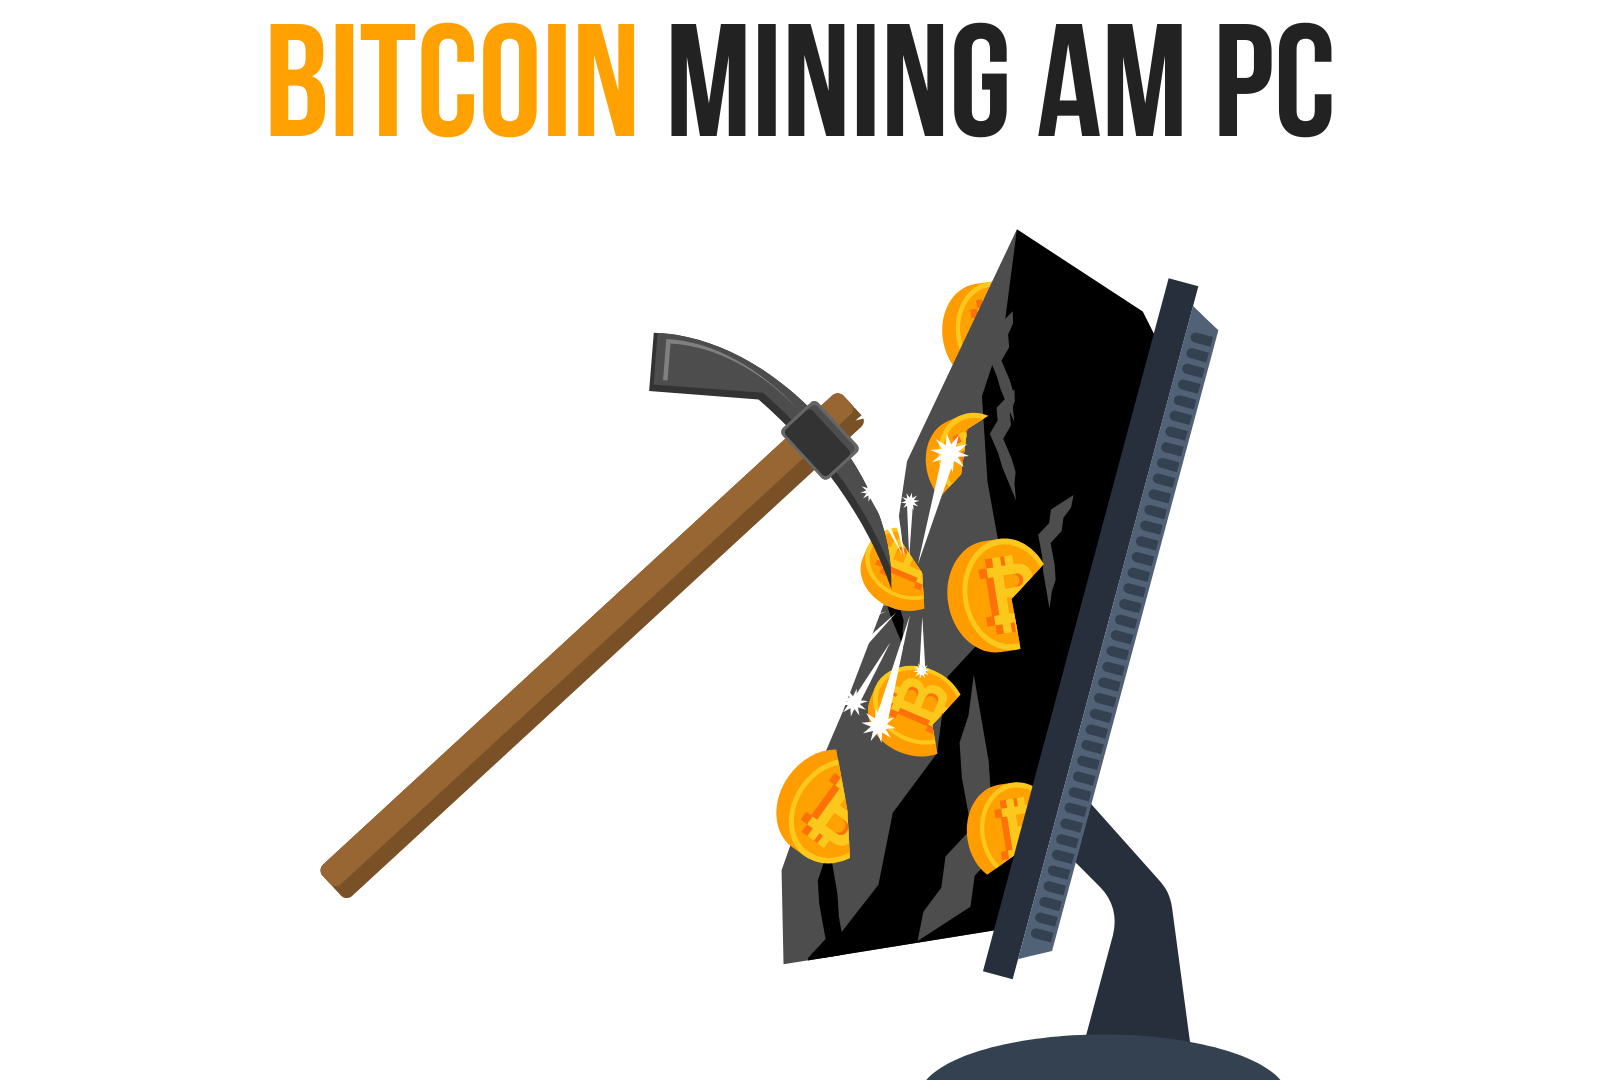 Bitcoin Mining am PC Grafik